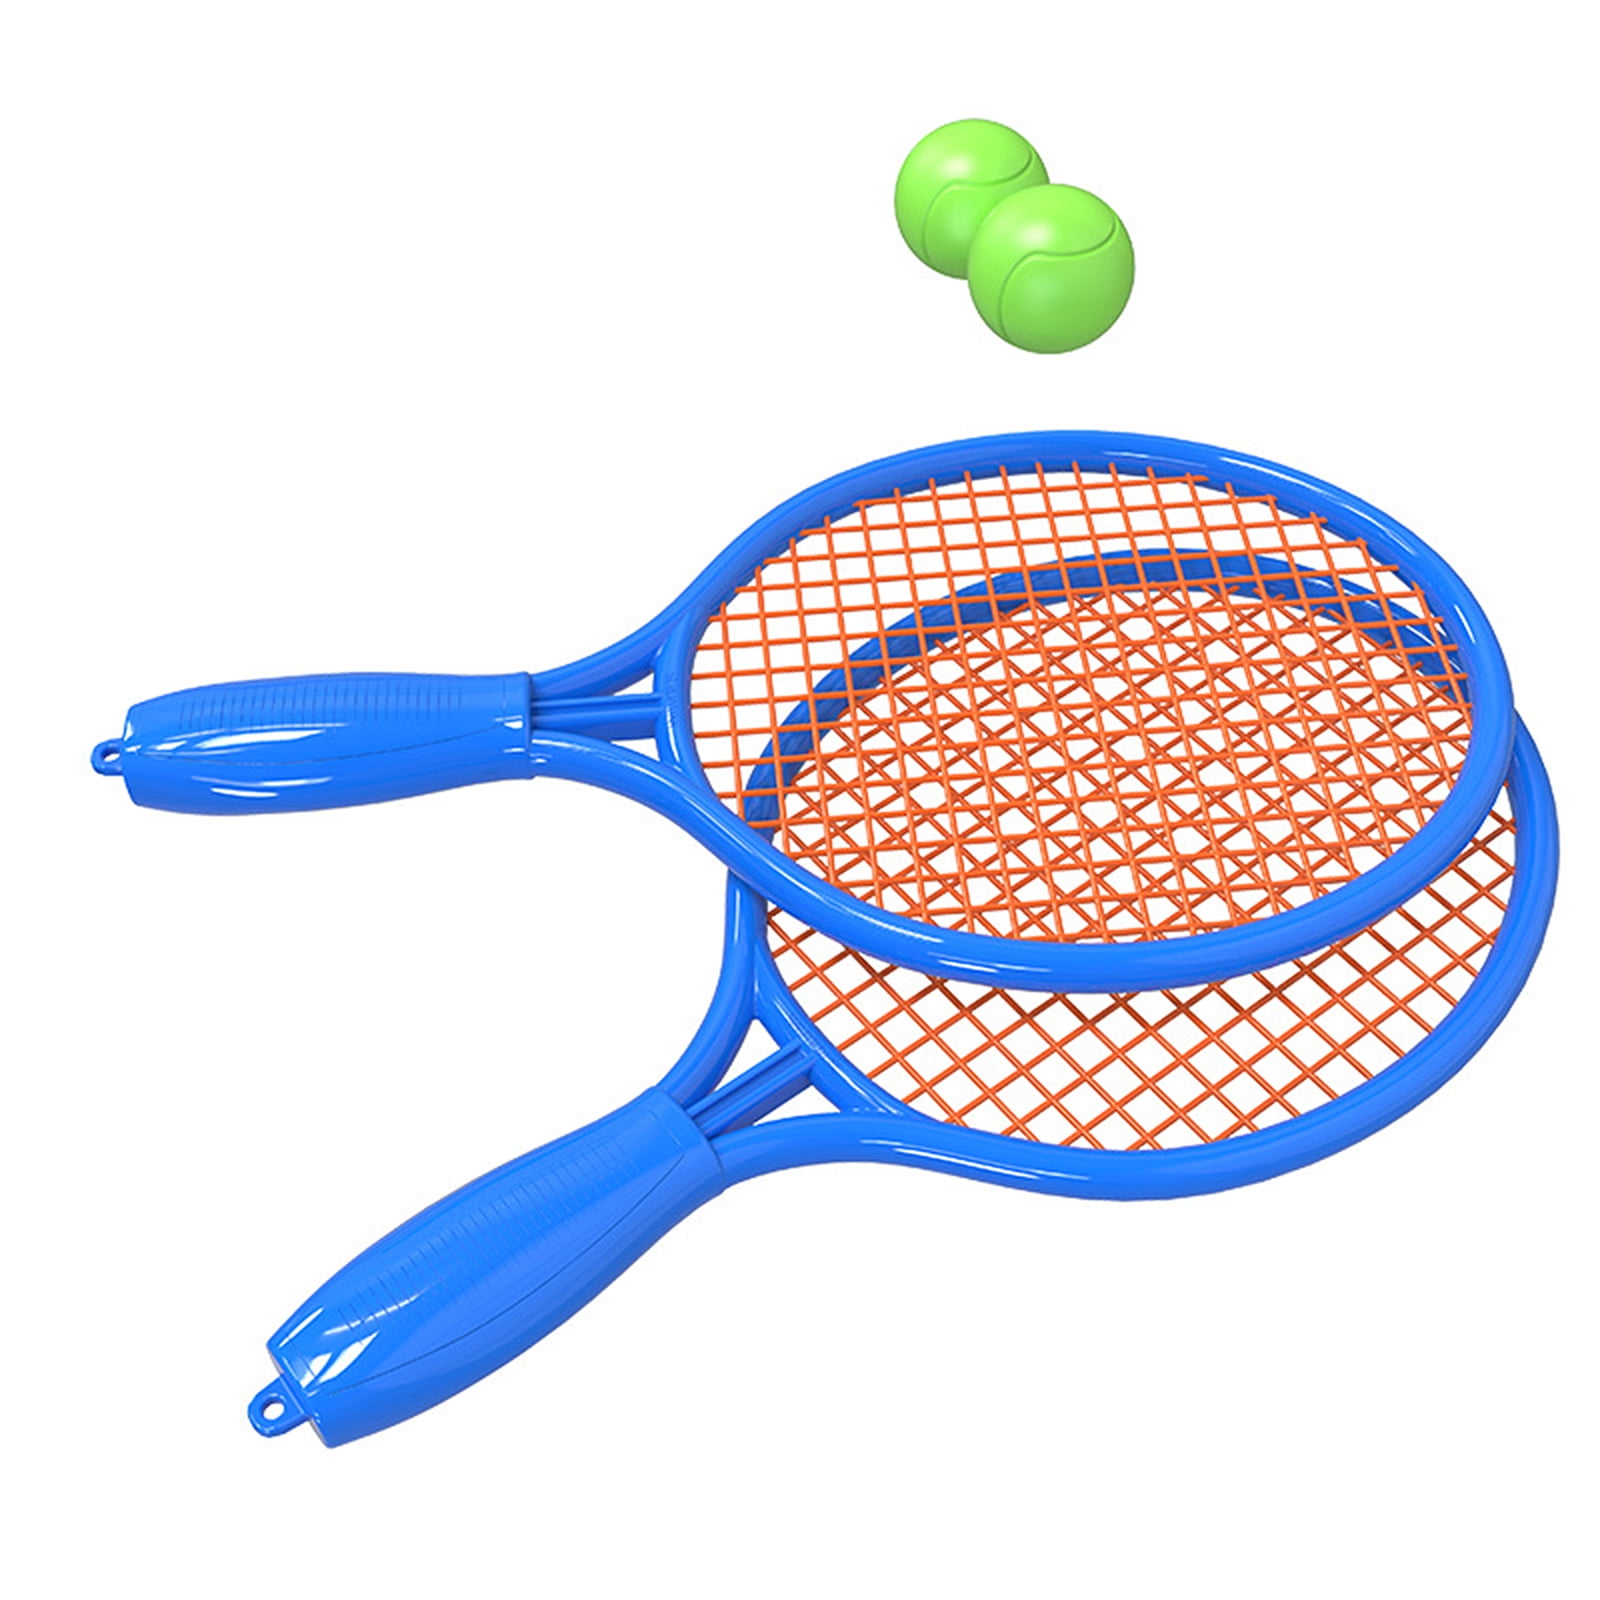 Kids Juniors 2 Player 23" Tennis Racquet Set Metal Rackets & Ball Carrying Case 